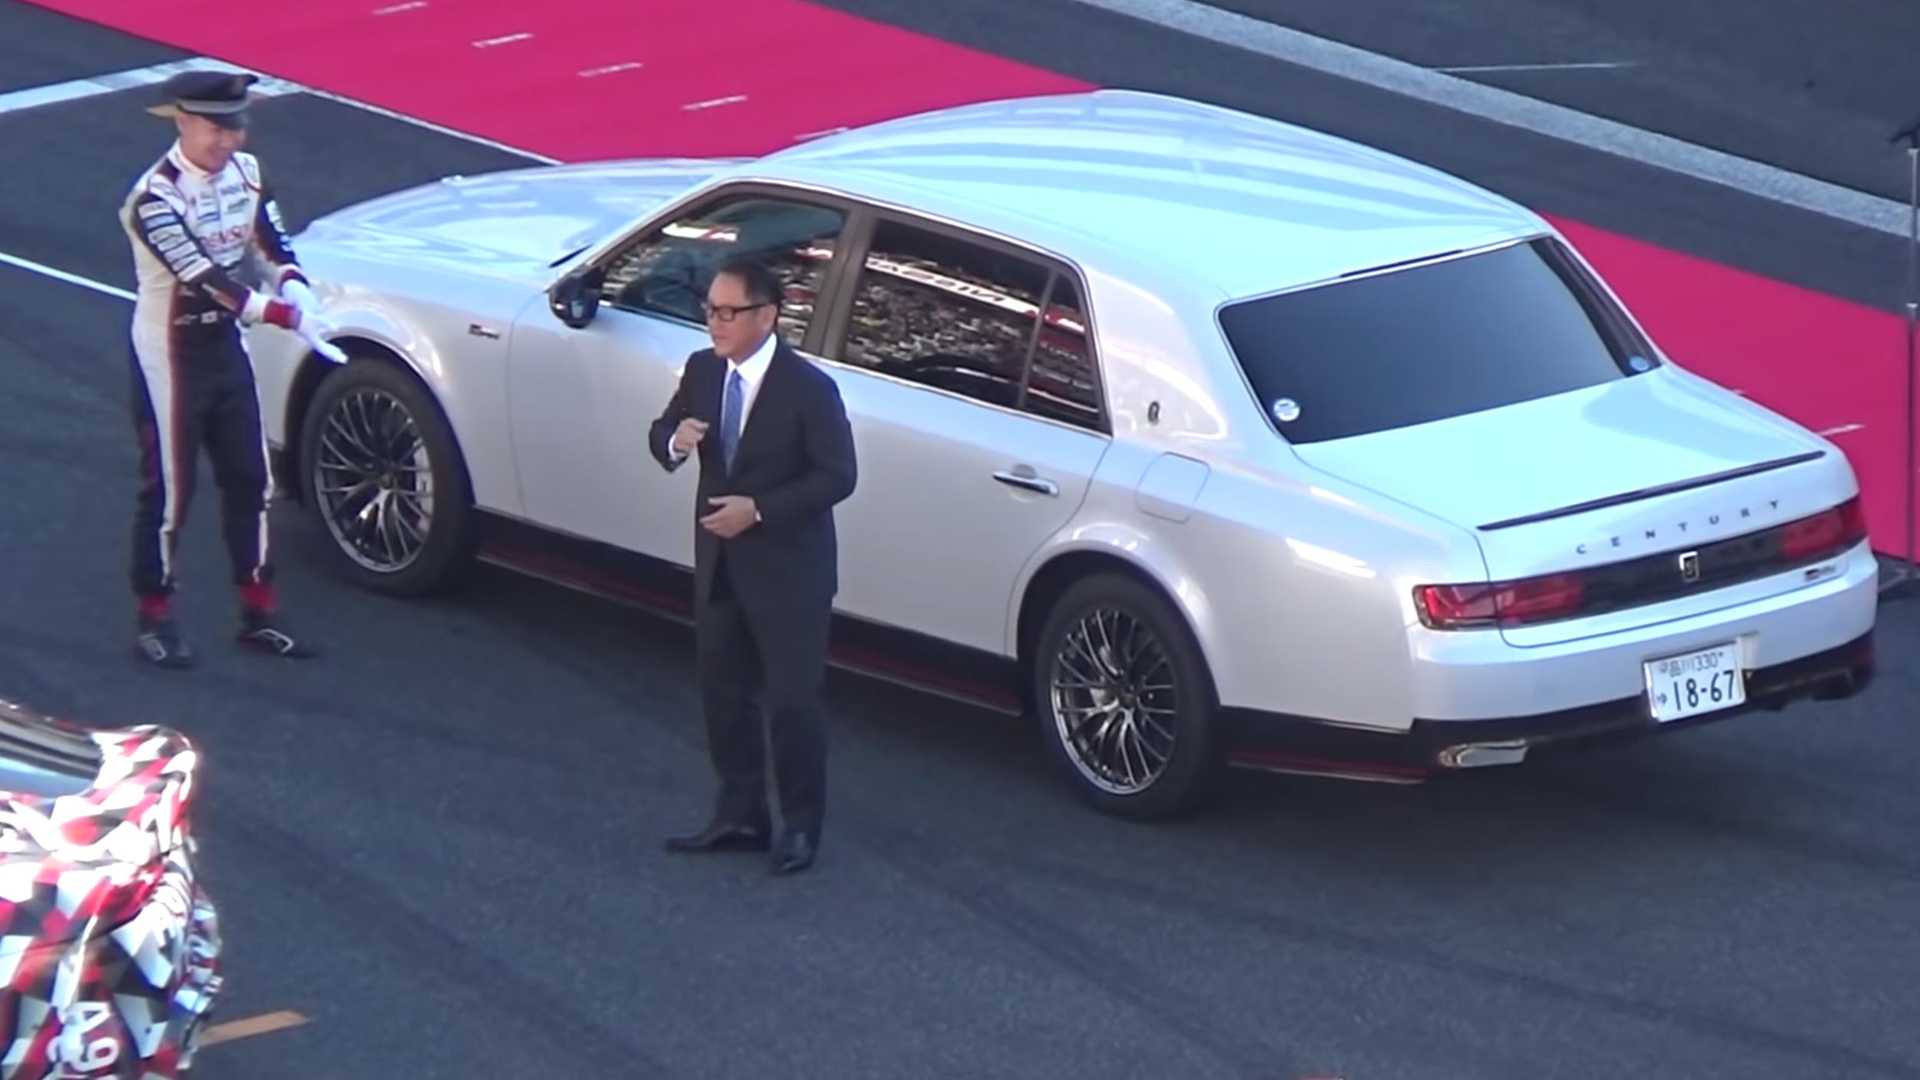 "بالفيديو" رئيس تويوتا يتباهى بسيارته الفاخرة على المضمار 1